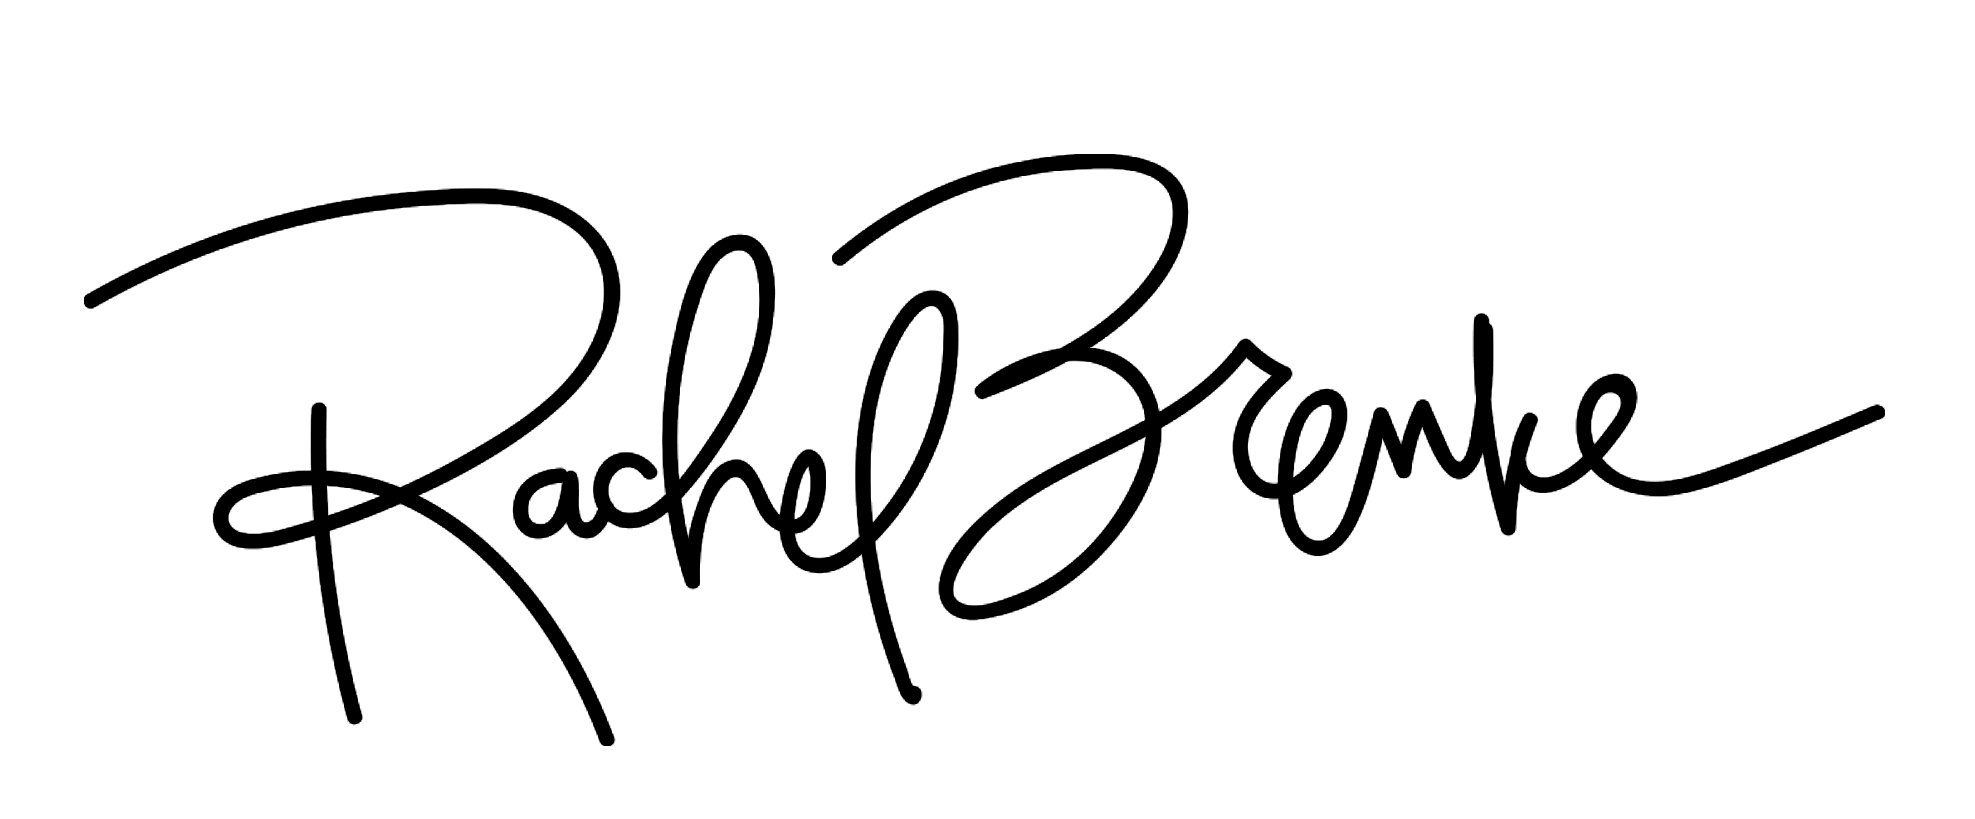 Rachel Logo - Rachel Brenke - Rachel Brenke